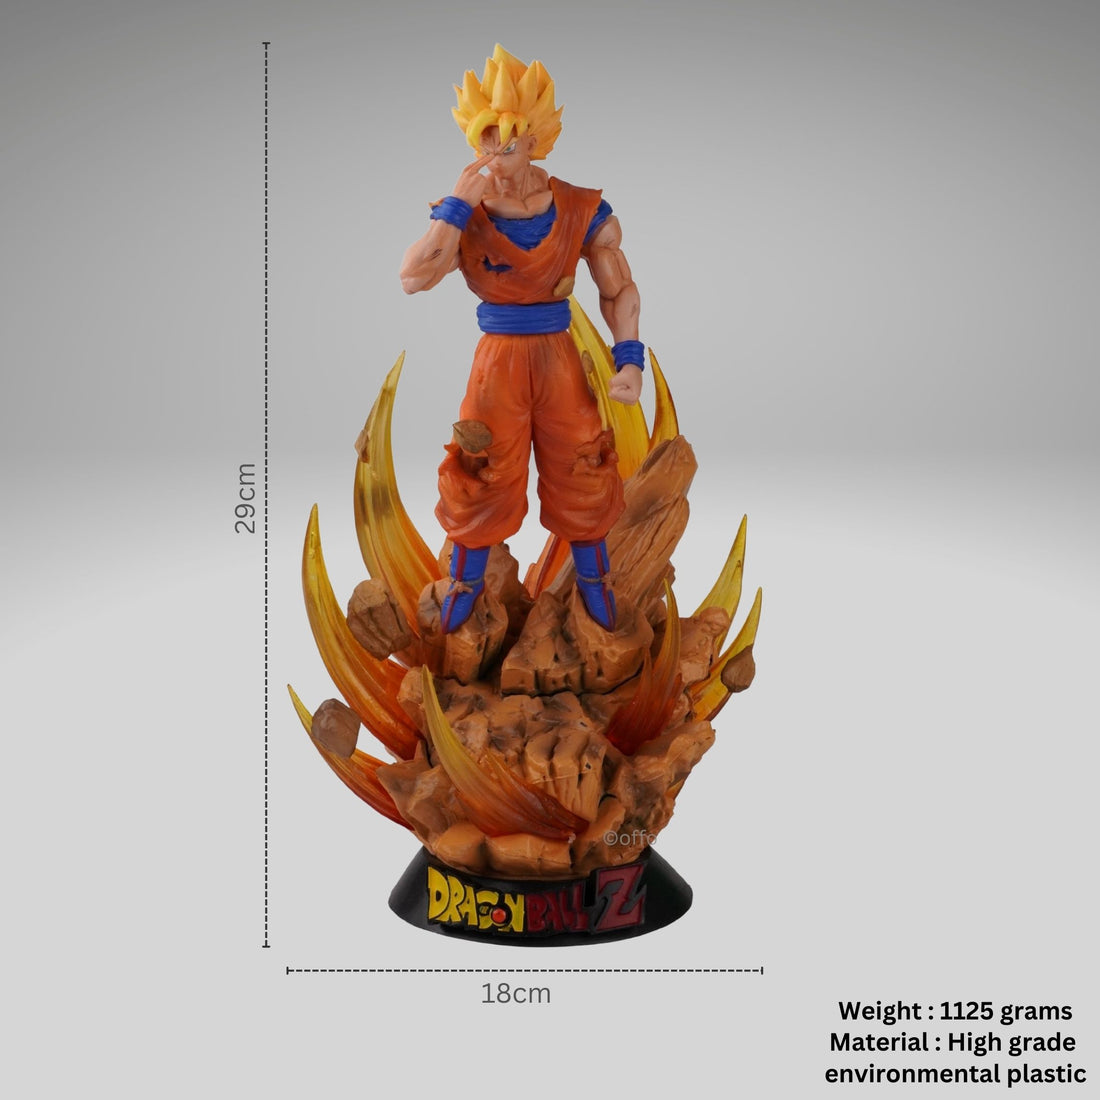 Dragon Ball Z Anime Goku Super Saiyan Adjustable Light Action Figure